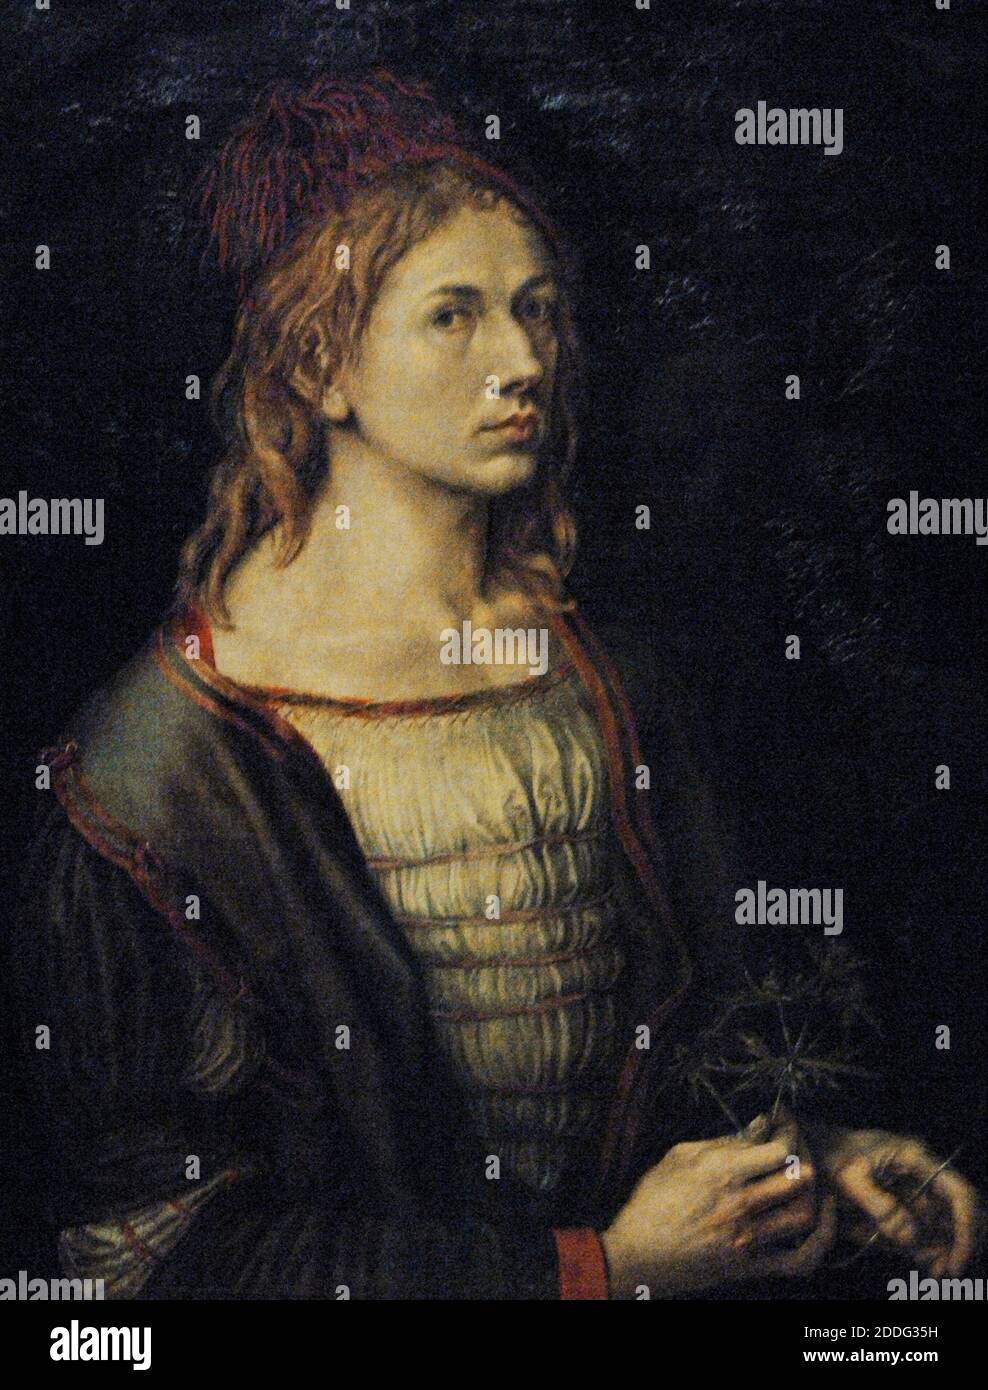 Albrecht Durer (1471-1528). German Renaissance painter and engraver. Portrait of the artist, 1493. Louvre Museum. Paris. France. Stock Photo